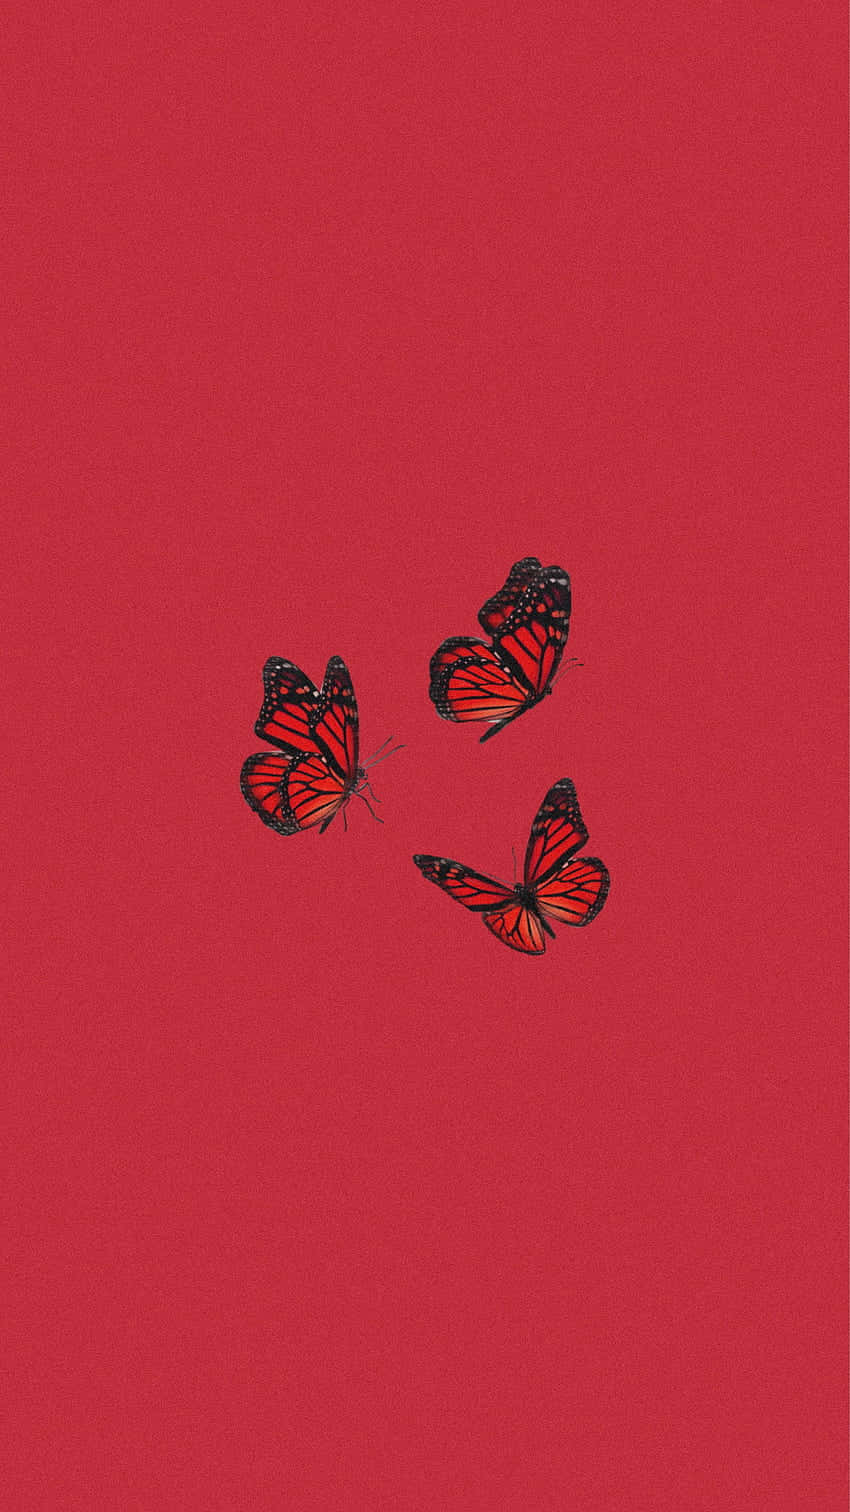 Einroter Hintergrund Mit Drei Schmetterlingen Darauf. Wallpaper